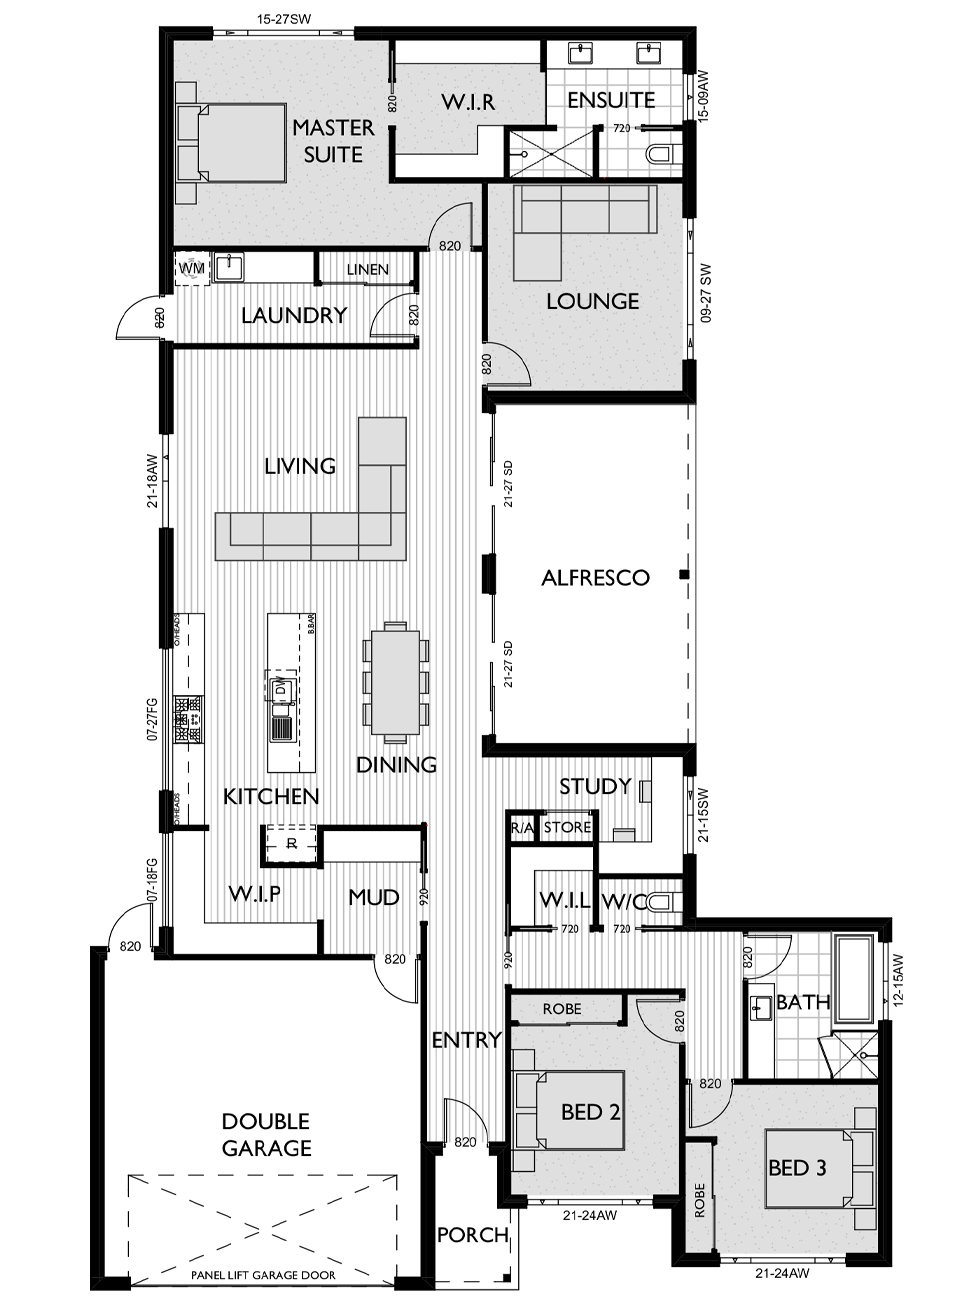 Floor Plan for Virtue Homes McLaren V4 family home